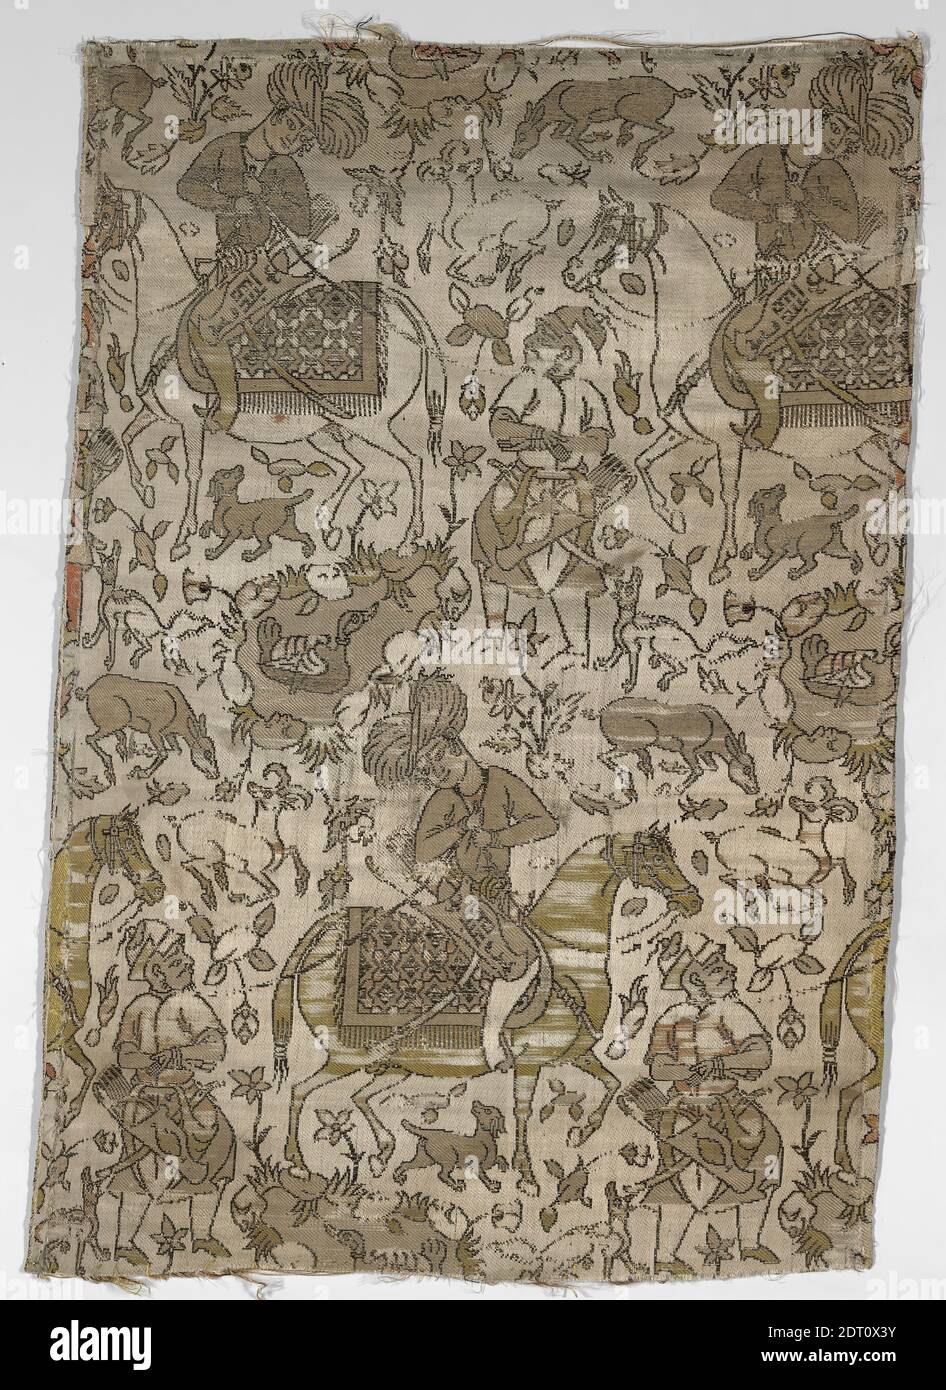 Künstler: Abdallah, aktiv 17. Jahrhundert, Stofffragment mit einem Kurtier und Gefangenen, Anfang 17. Jahrhundert, Seide; Verbundgewebe, 13 11/16 × 20 1/16 in. (34.7 × 51 cm), Dieses Seidenfragment zeigt einen elegant gekleideten Höfling auf dem Pferderücken, begleitet von einem Gefangenen zu Fuß, ein Motiv, das im Iran des 16. Jahrhunderts sowohl in Gemälden als auch in Textilien populär wurde. Verschiedene Tiere und üppige Vegetation umgeben das Paar. Die Signatur des Künstlers ist auffällig auf den Köcher des idealisierten Reiters gelegt; es heißt: Werk von ‘Abd Allah., Iranisch/Persisch, Islamisch, Safavid-Dynastie (1501–1722), Textilien Stockfoto